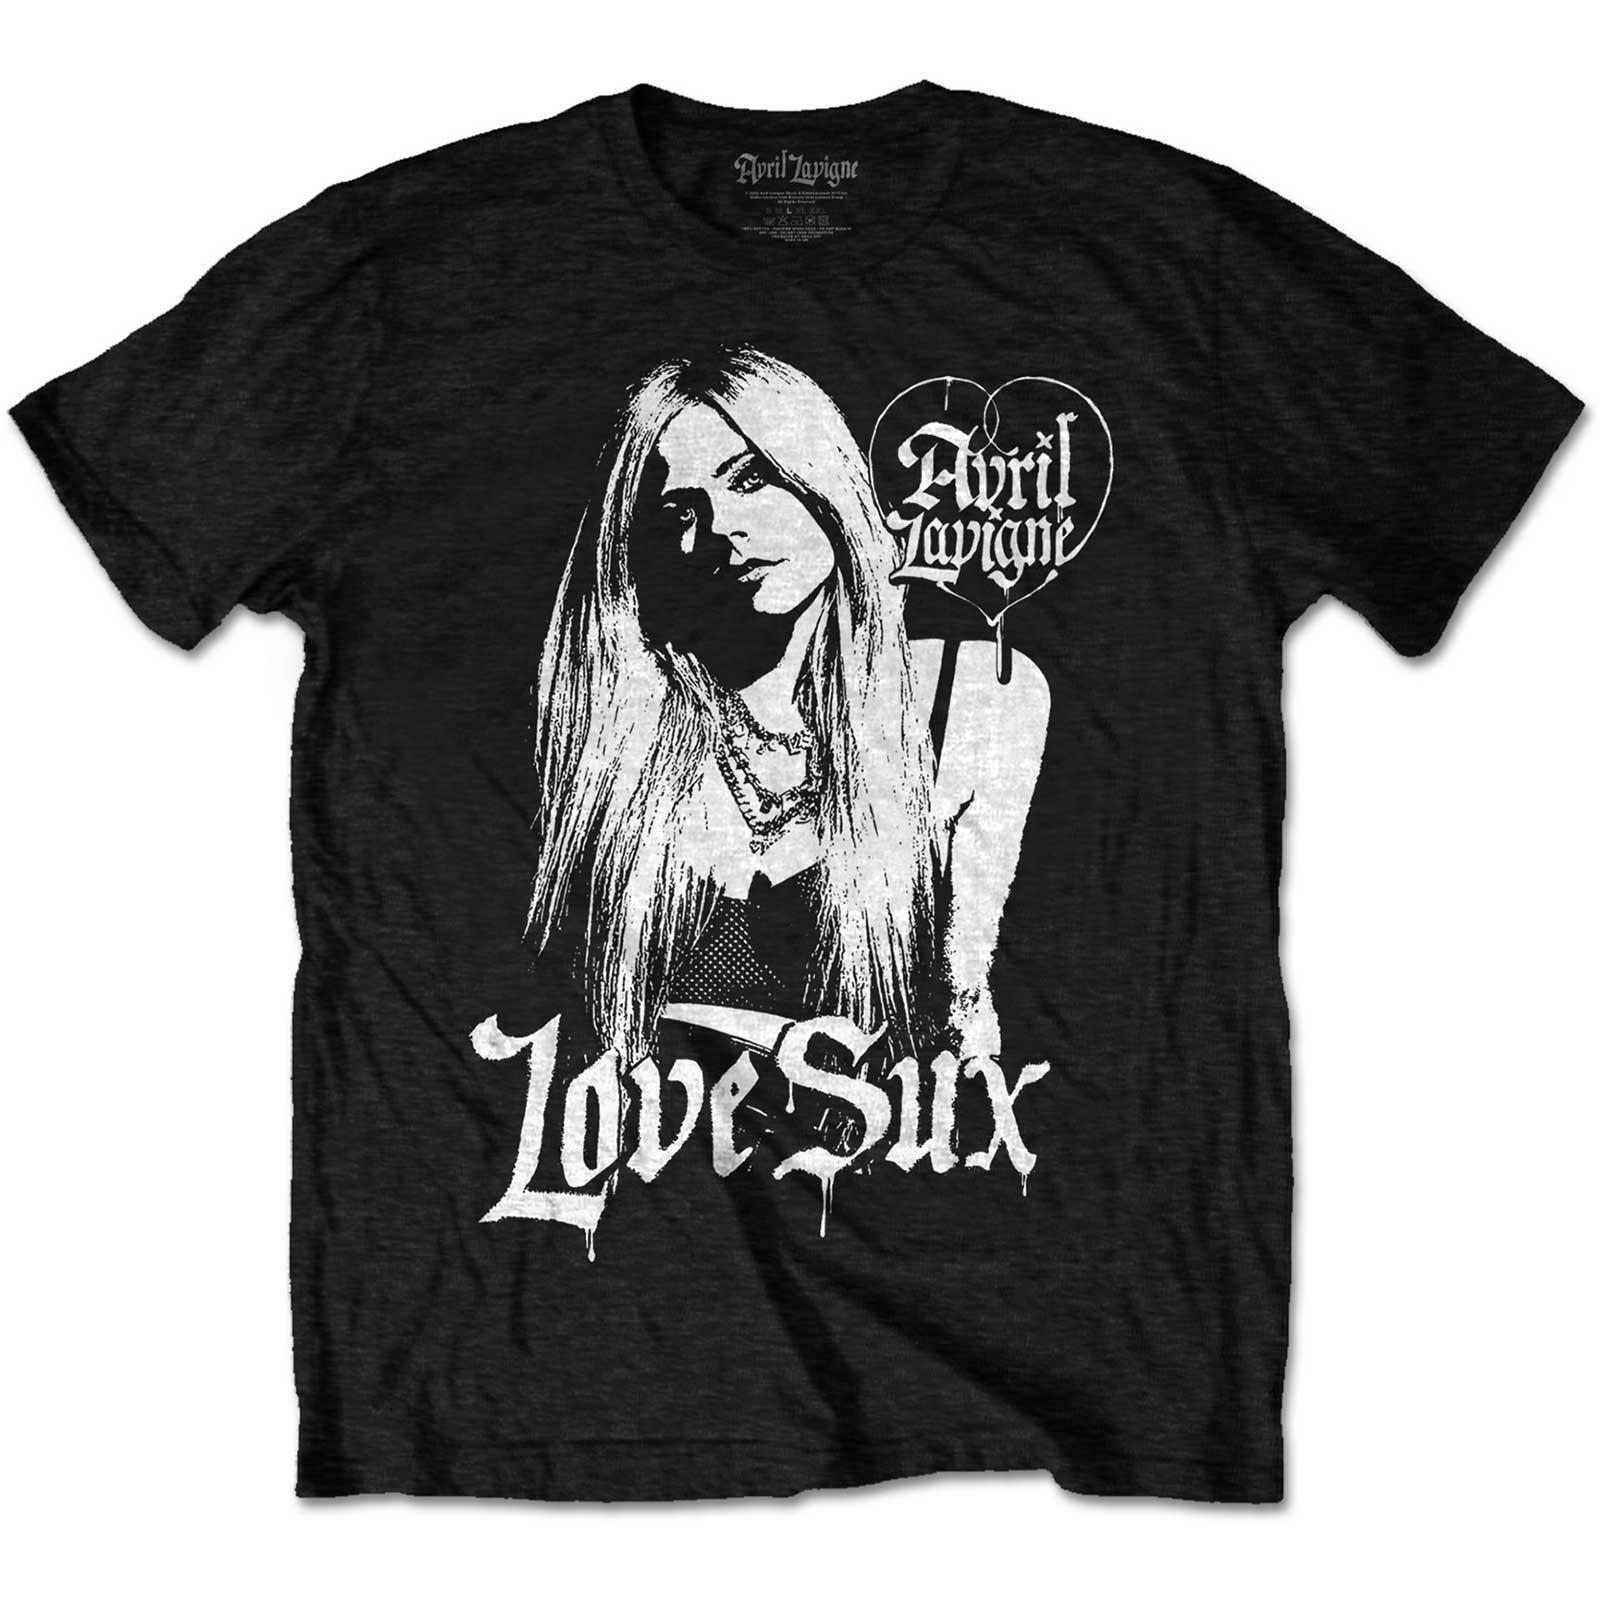 Avril Lavigne Unisex Adult Love Sux Cotton T-Shirt (Black) (L)